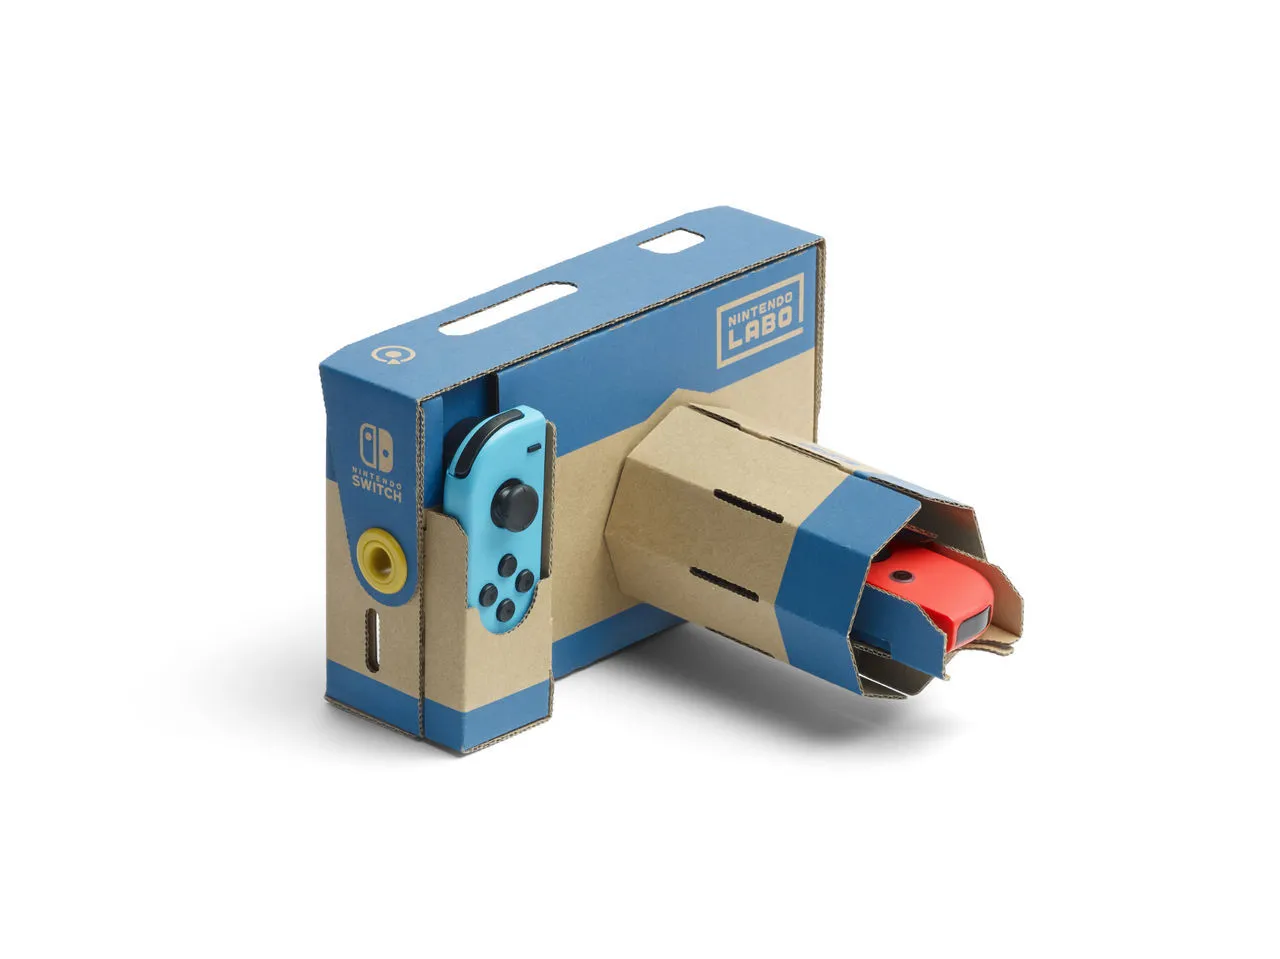 puerta patrocinado emoción Nintendo Labo Kit VR: ¿merece la pena? Precio, detalles e impresiones